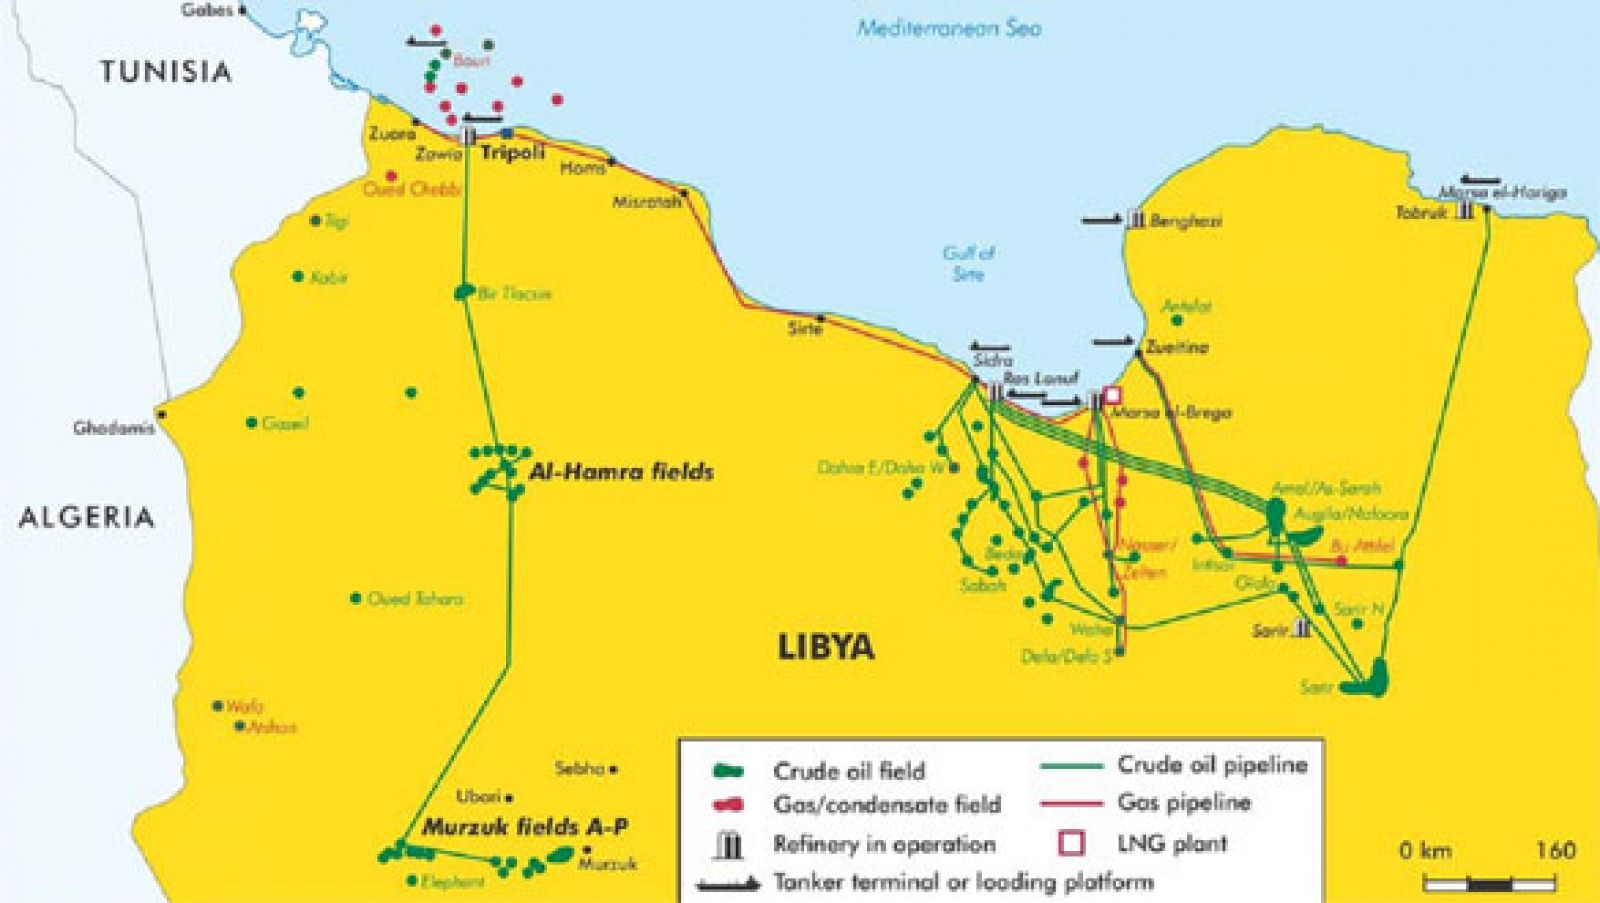 El mapa del petróleo libio, según la Agencia Internacional de la Energía.